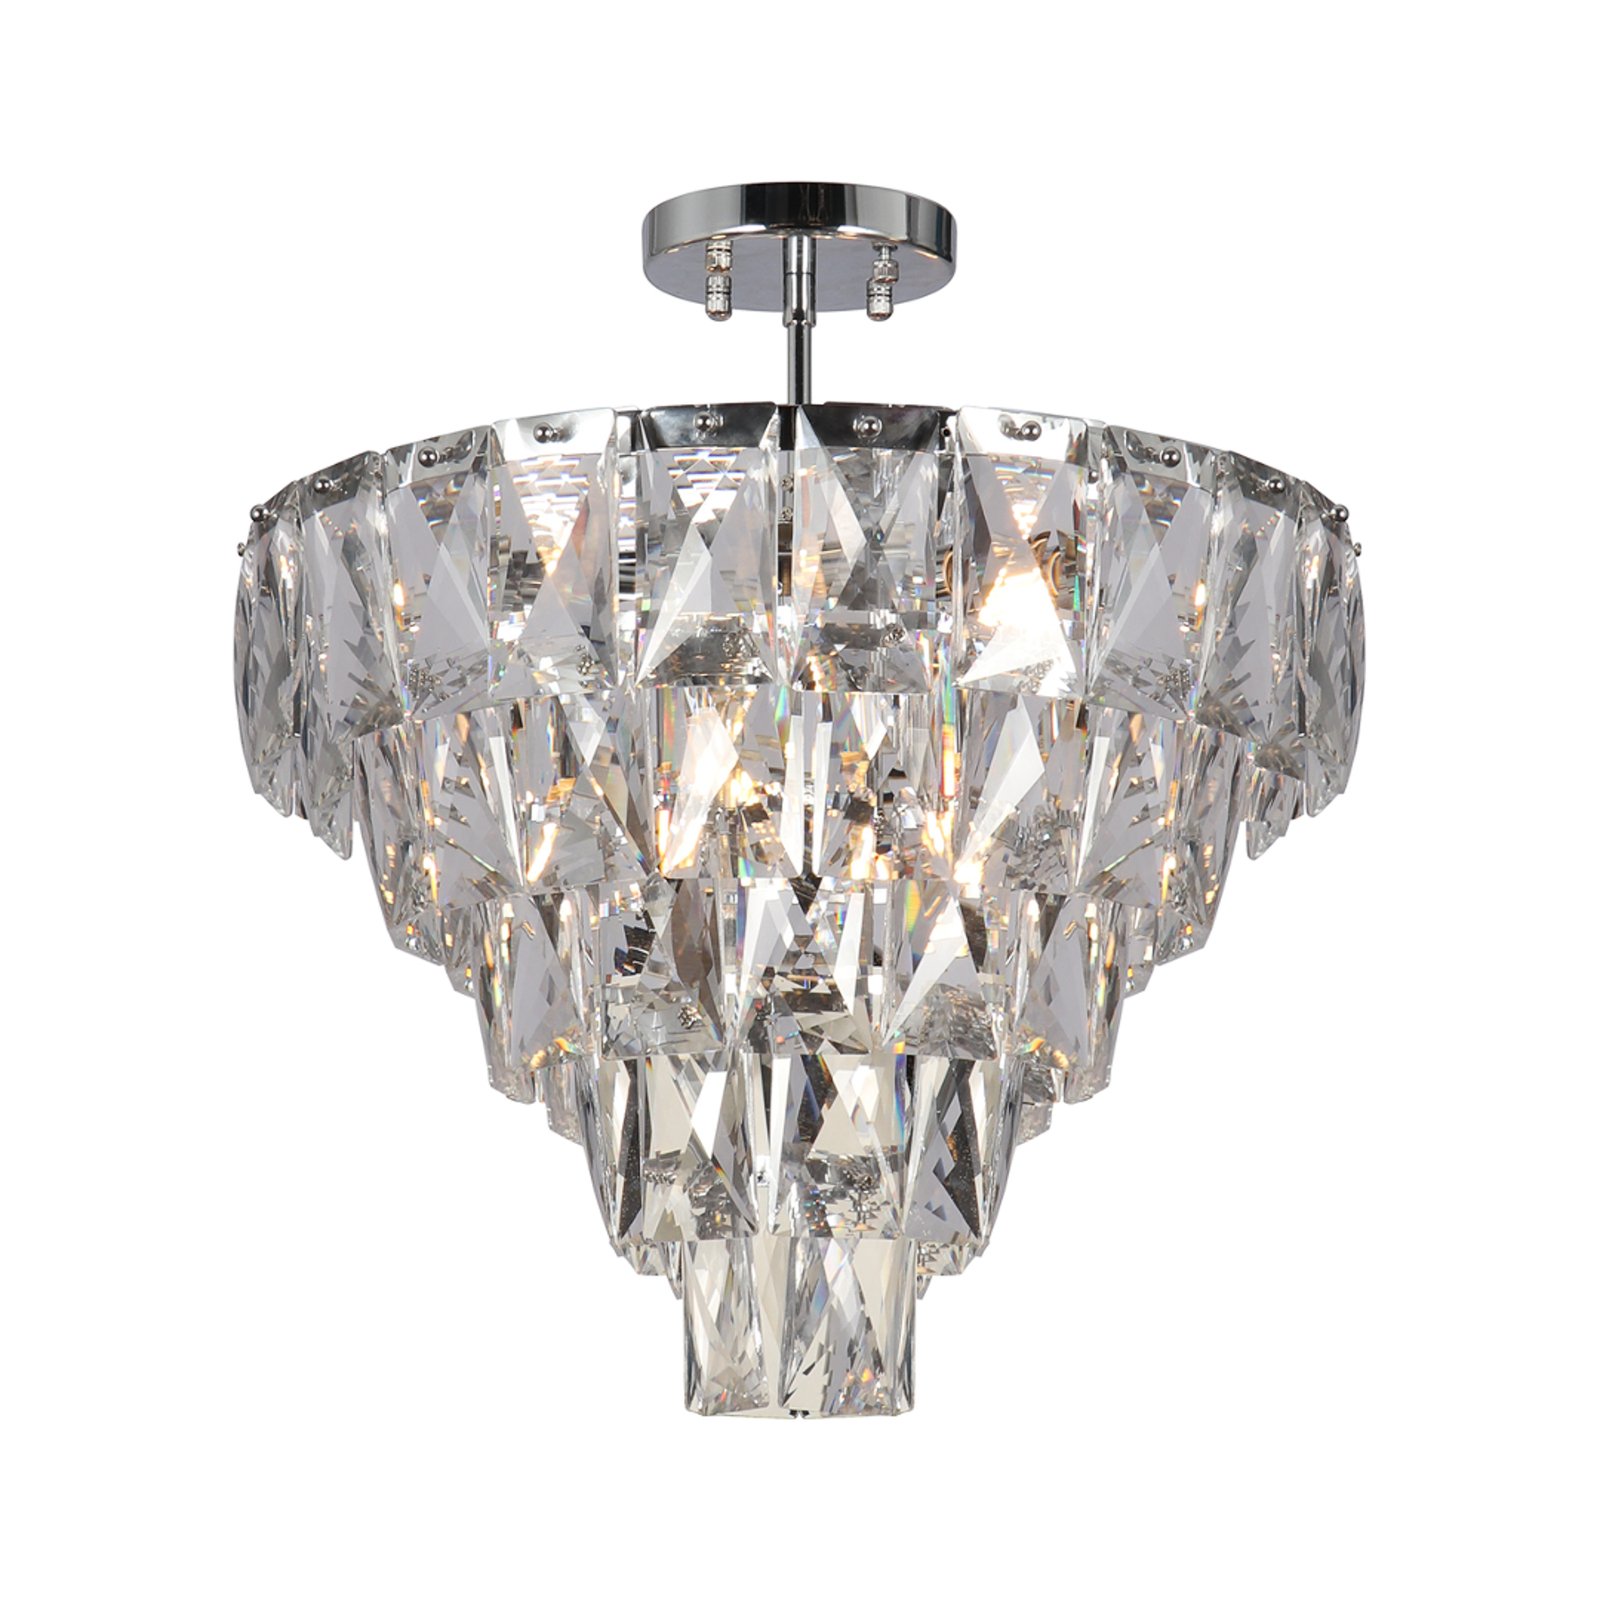 Lampa sufitowa Chelsea metal chrom kolor szkła kryształy Ø 50 cm